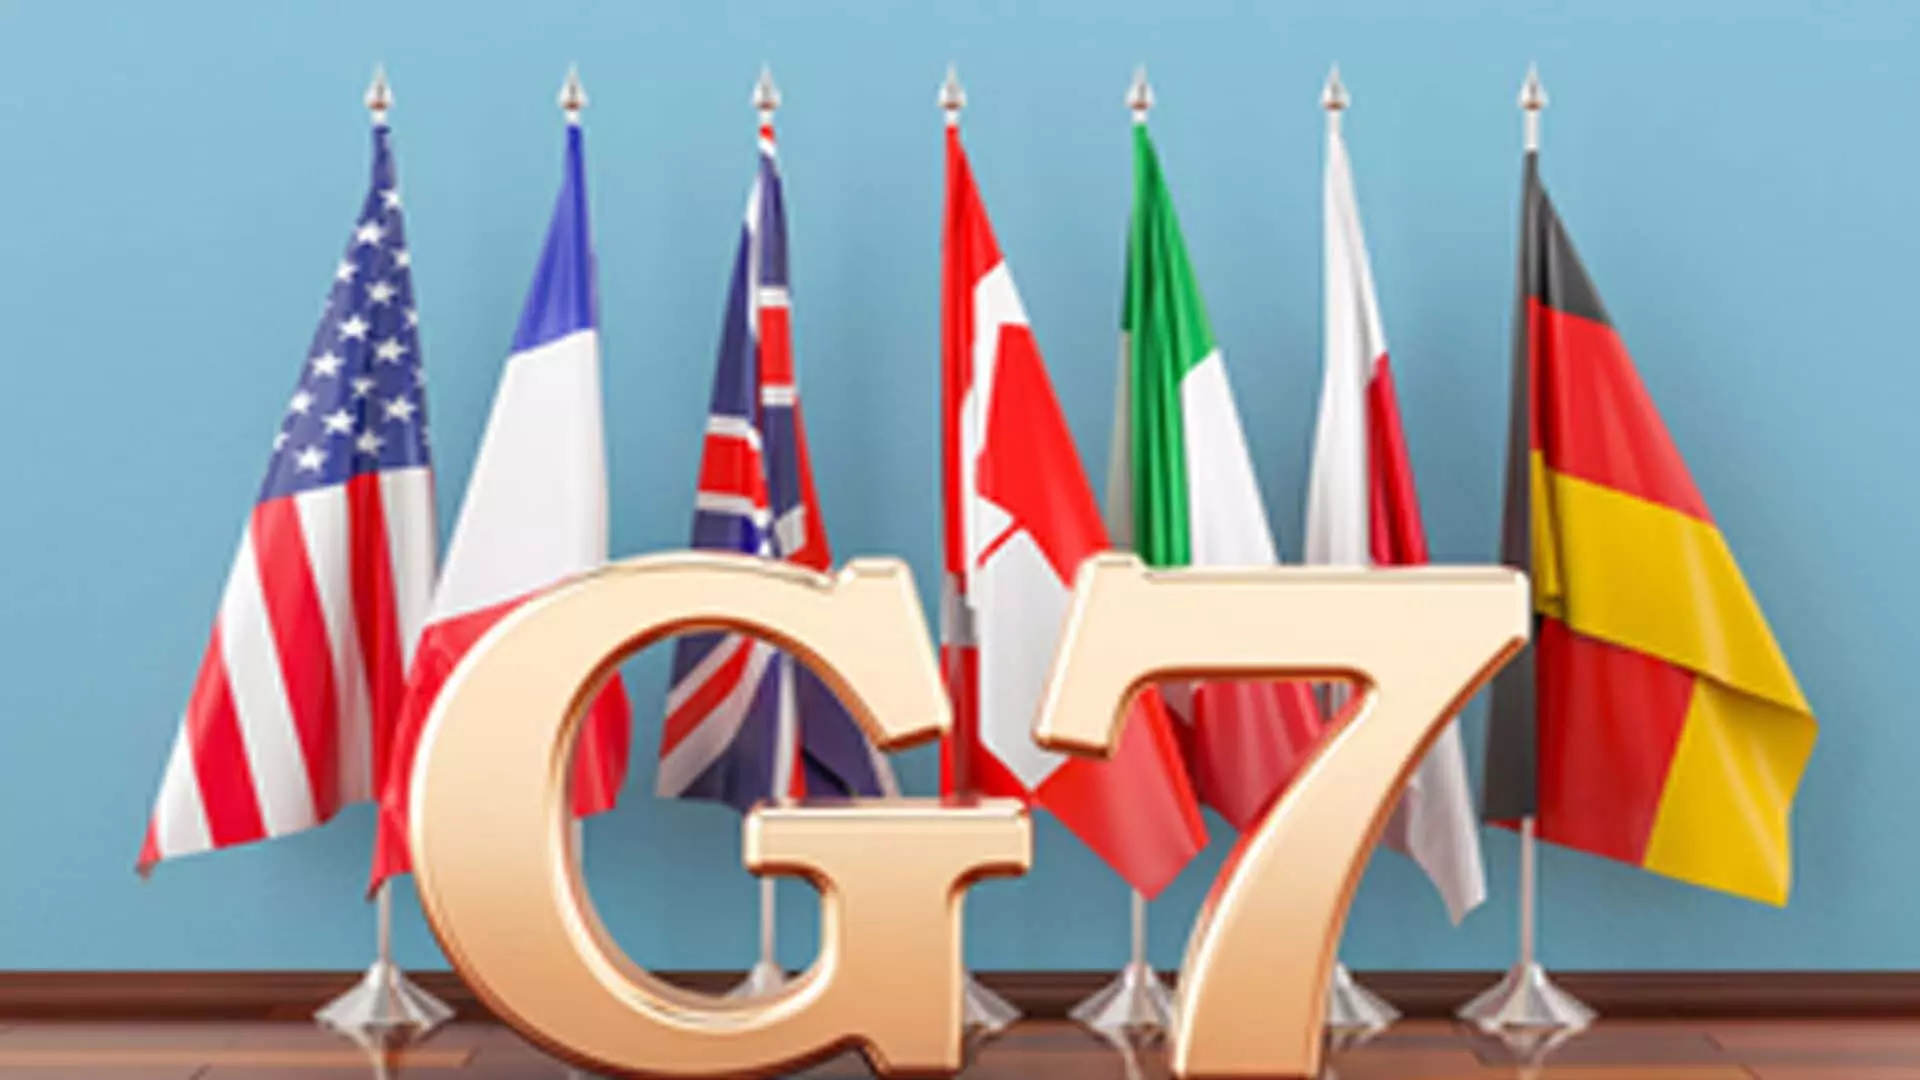 Italy: इटली में शिखर सम्मेलन के लिए जी-7 नेताओं के एकत्र होने पर यूक्रेन एजेंडे पर हावी रहा